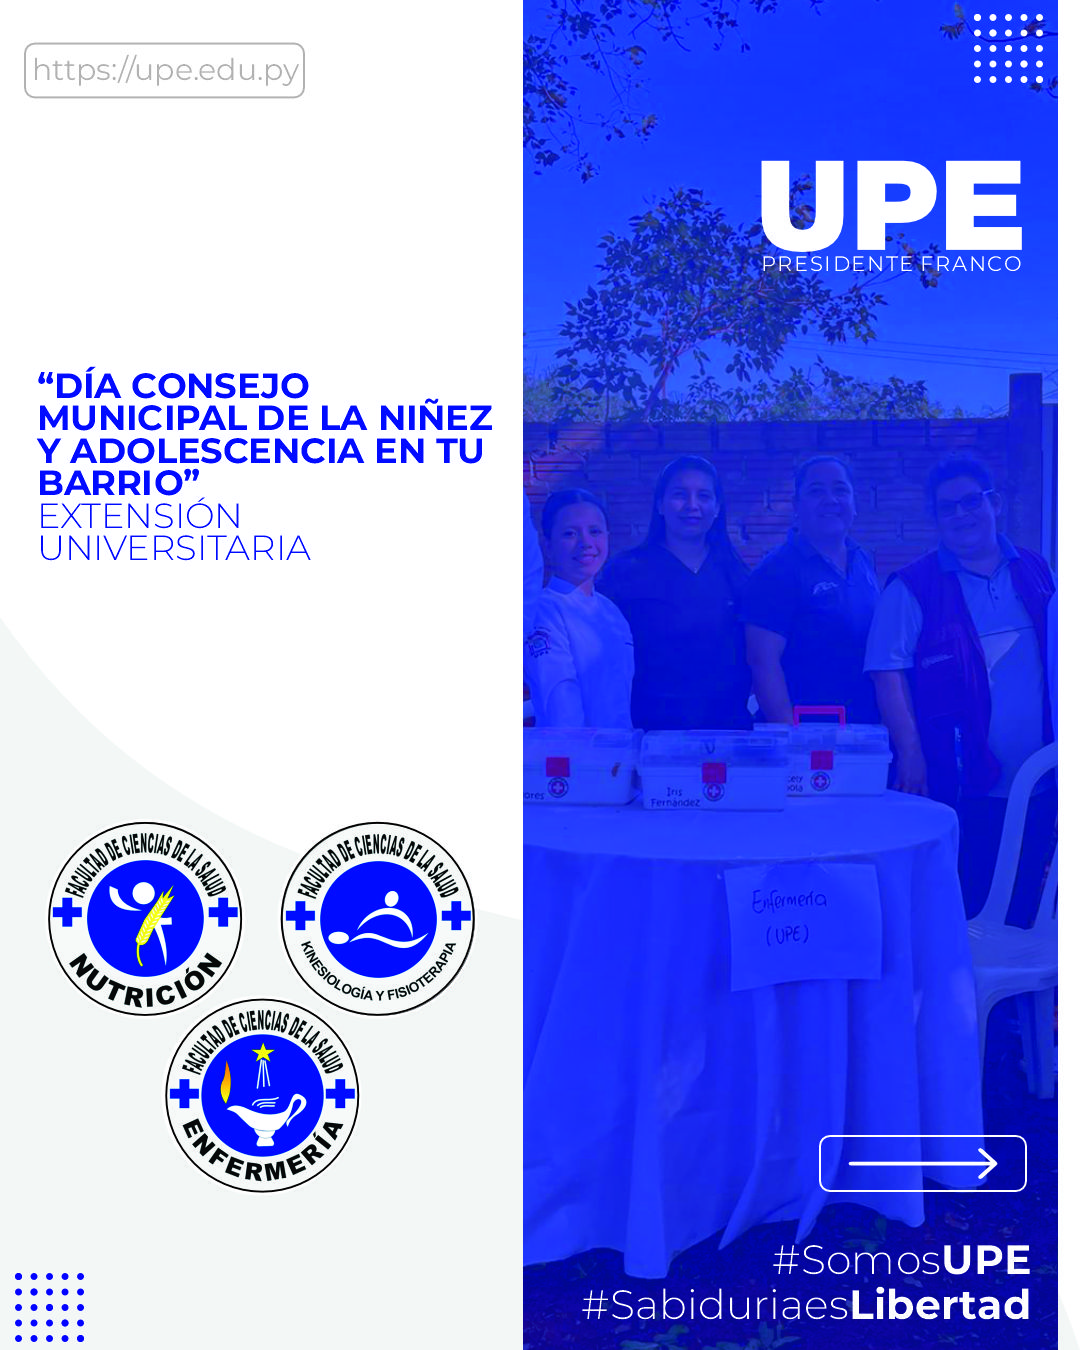 La UPE en el Día Consejo Municipal de la Niñez y Adolescencia: Impacto Social y Formación Profesional